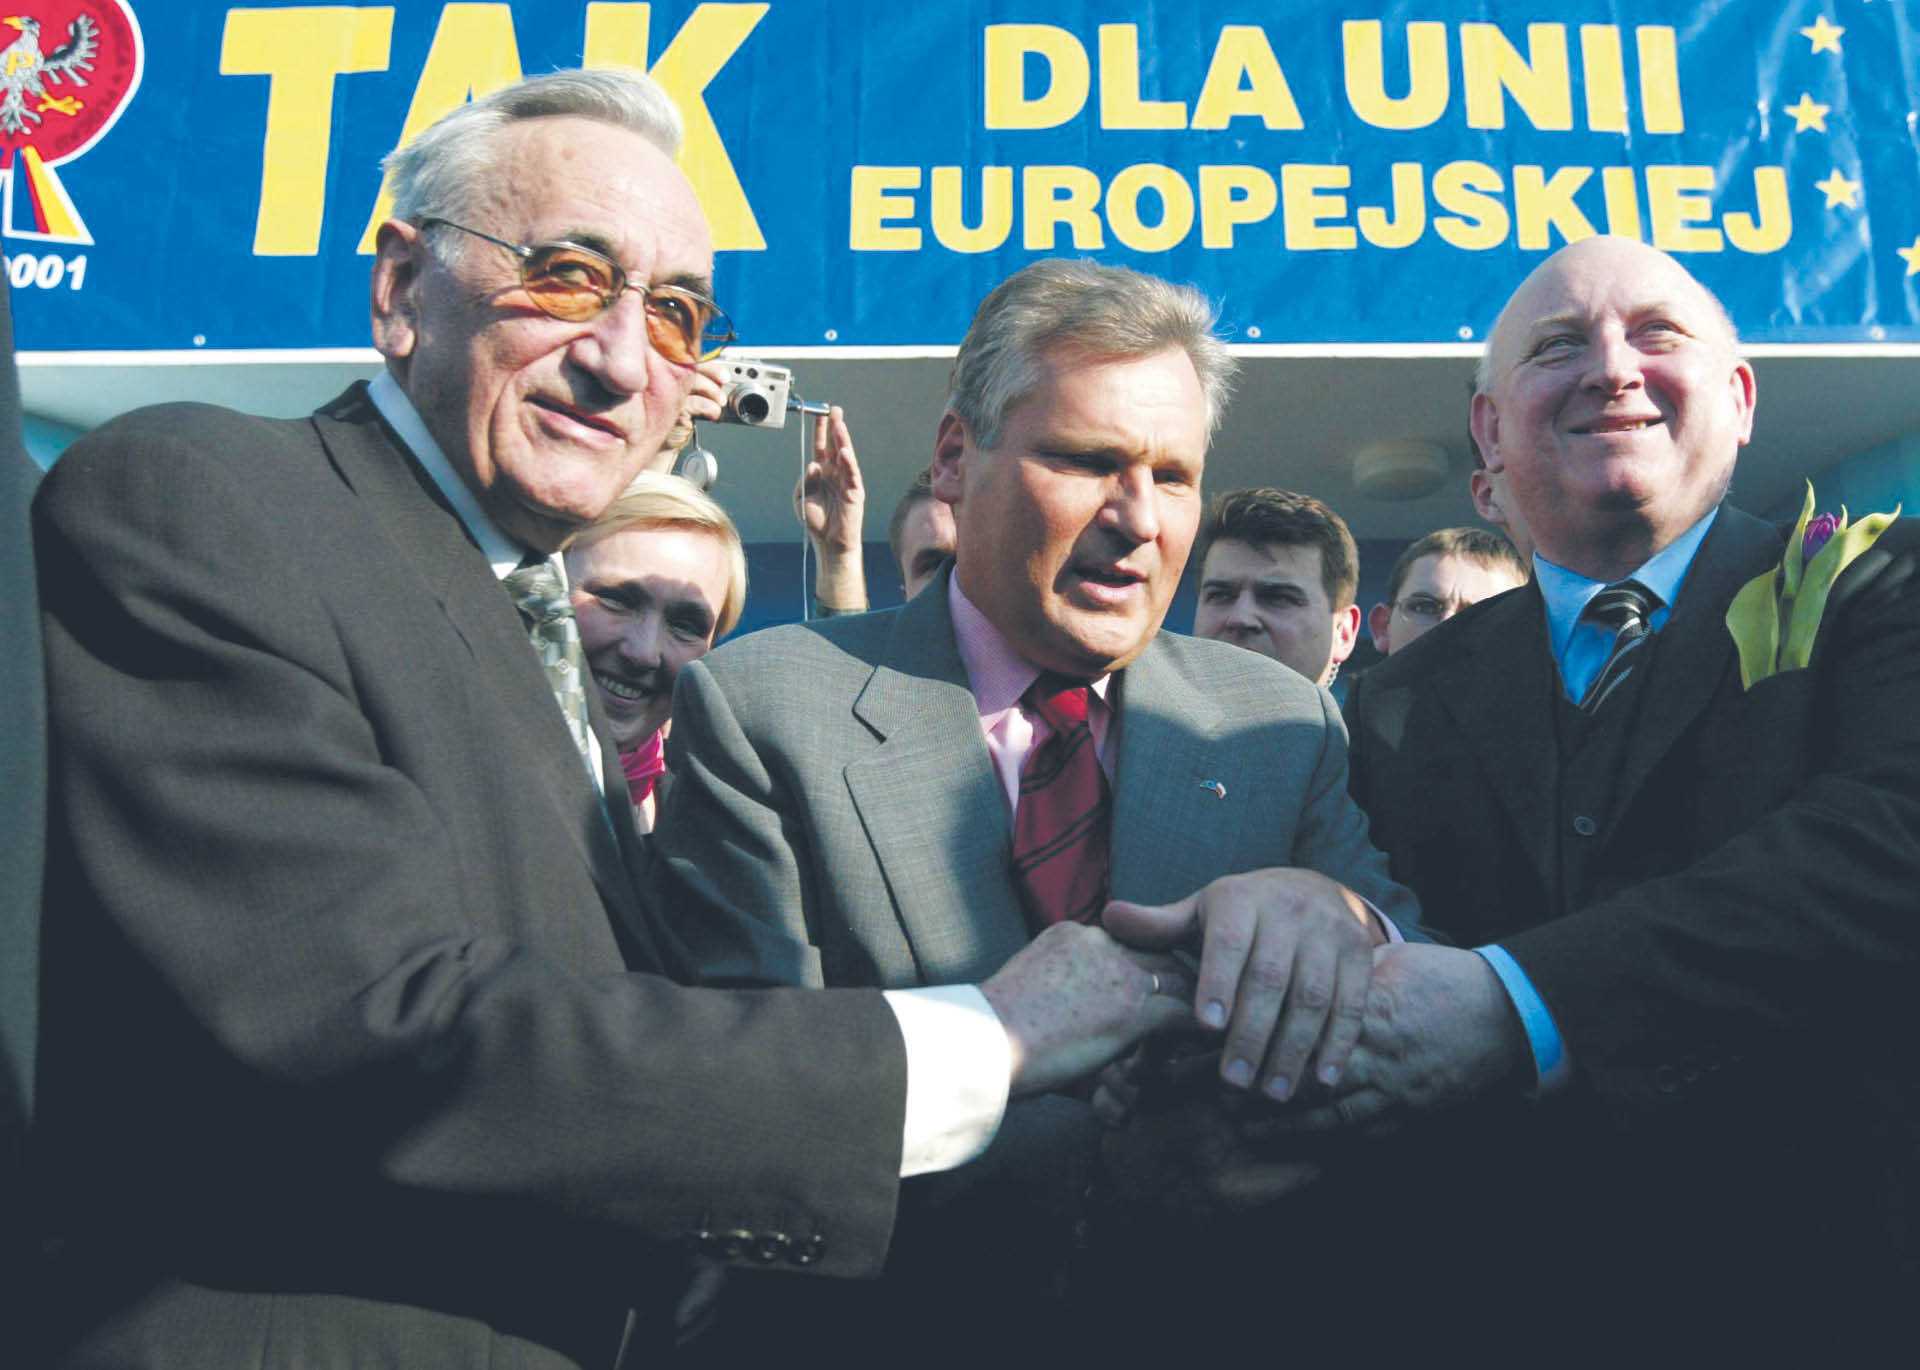 Tadeusz Mazowiecki, Aleksander Kwaśniewski i Józef Oleksy na wiecu poparcia dla Polski w UE. Płock, 25 kwietnia 2003 r.